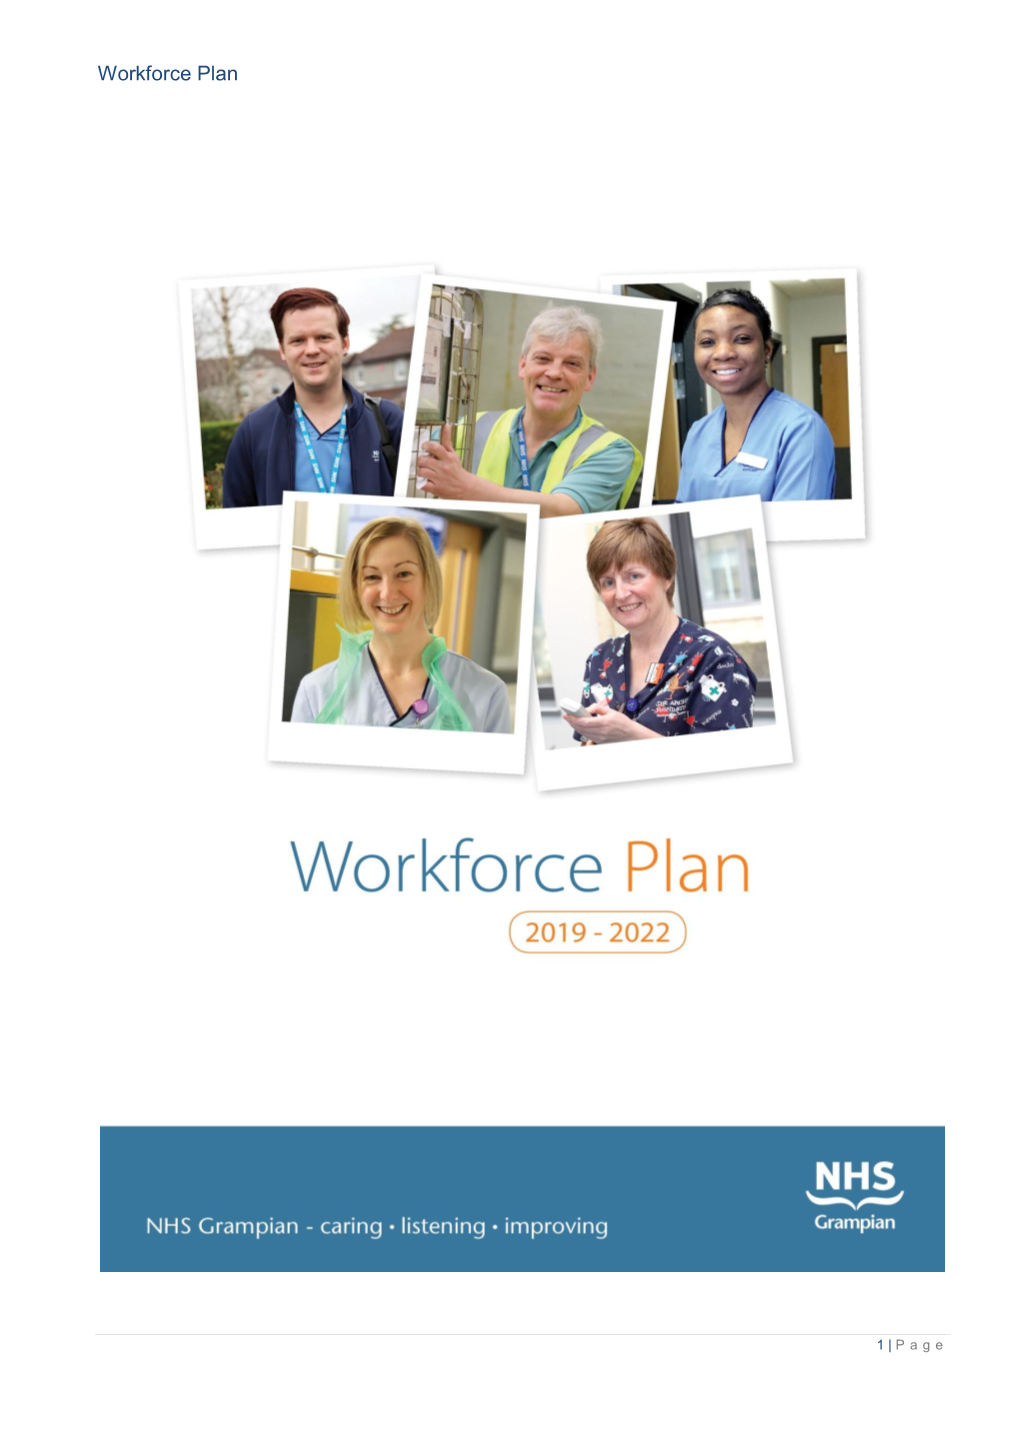 NHS Grampian Workforce Plan 2019-2022, Please Contact: Pauline Rae, NHS Grampian Workforce Service Manager, 01224 556206 Or Pauline.Rae@Nhs.Net